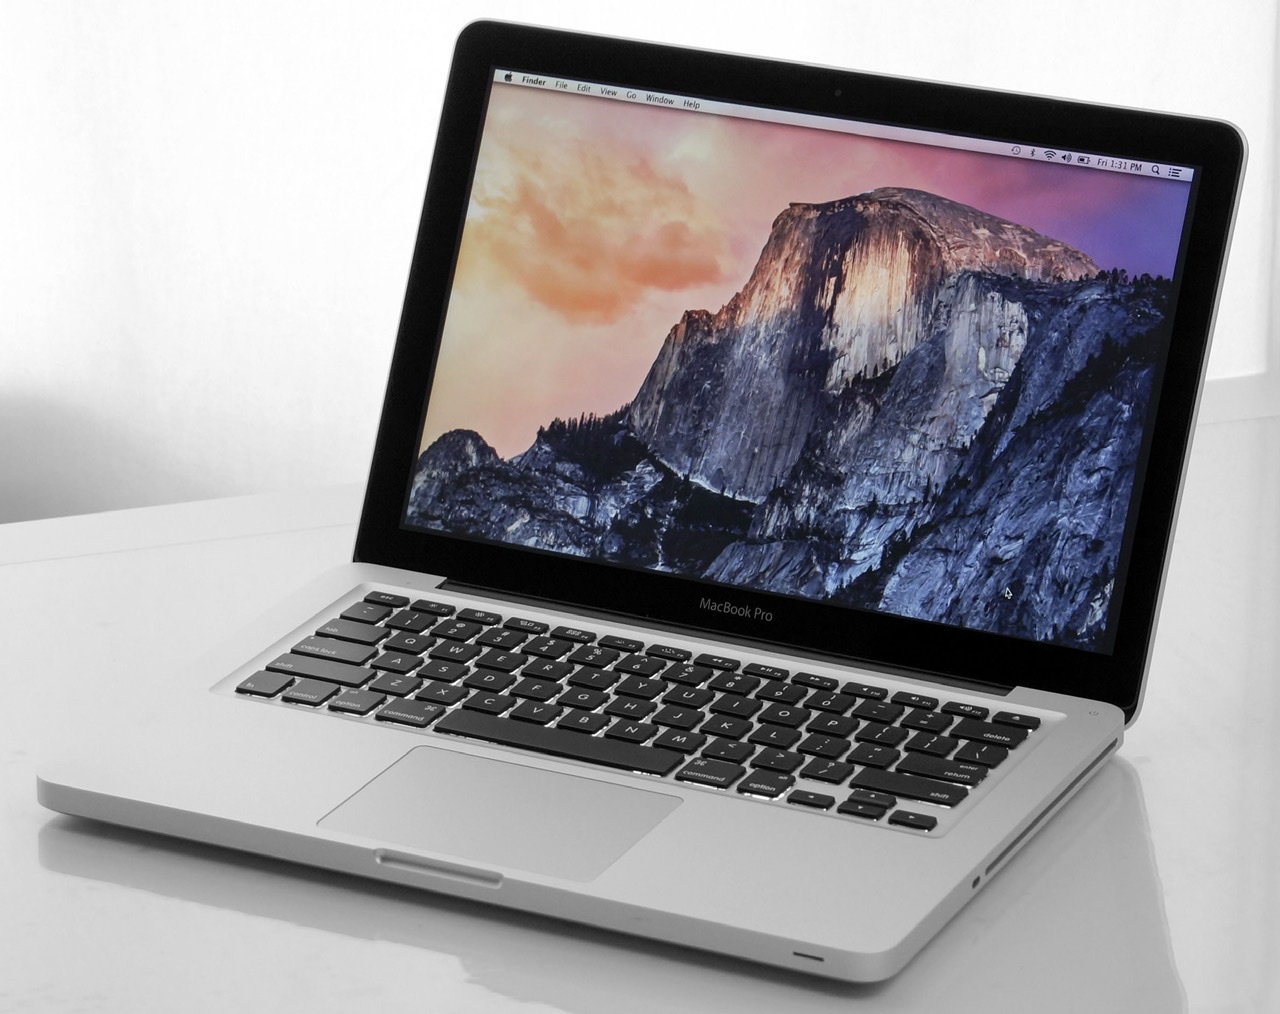 Mới đây Apple đã thêm chiếc MacBook Pro 13 inch đầu tiên ra mắt cuối năm 2012 vào [URL='https://sup